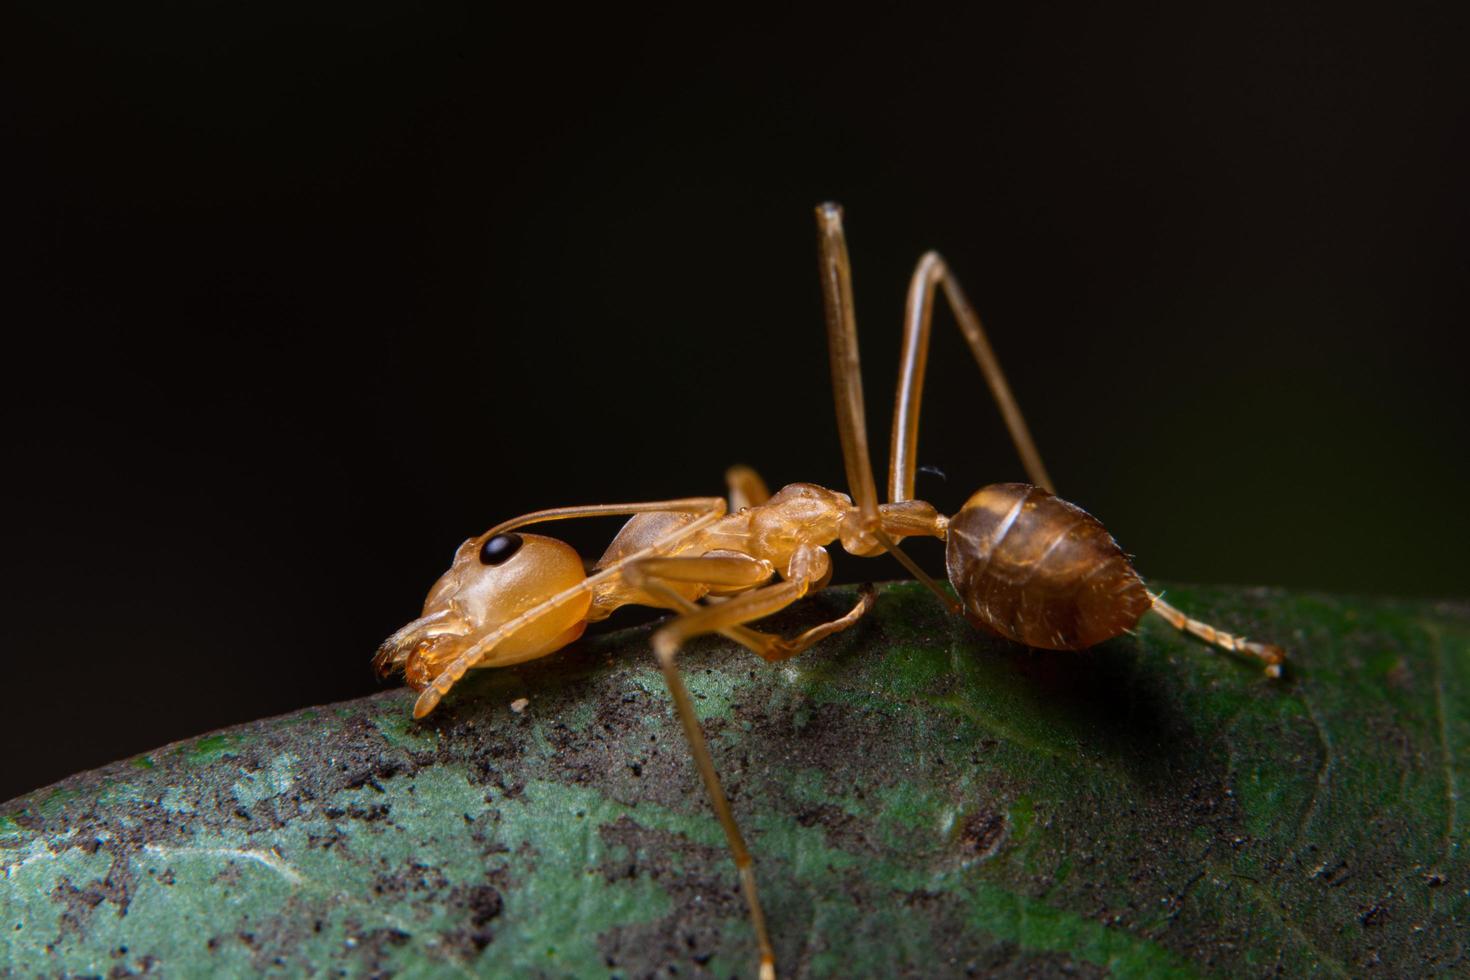 röd myra på ett blad, makro foto